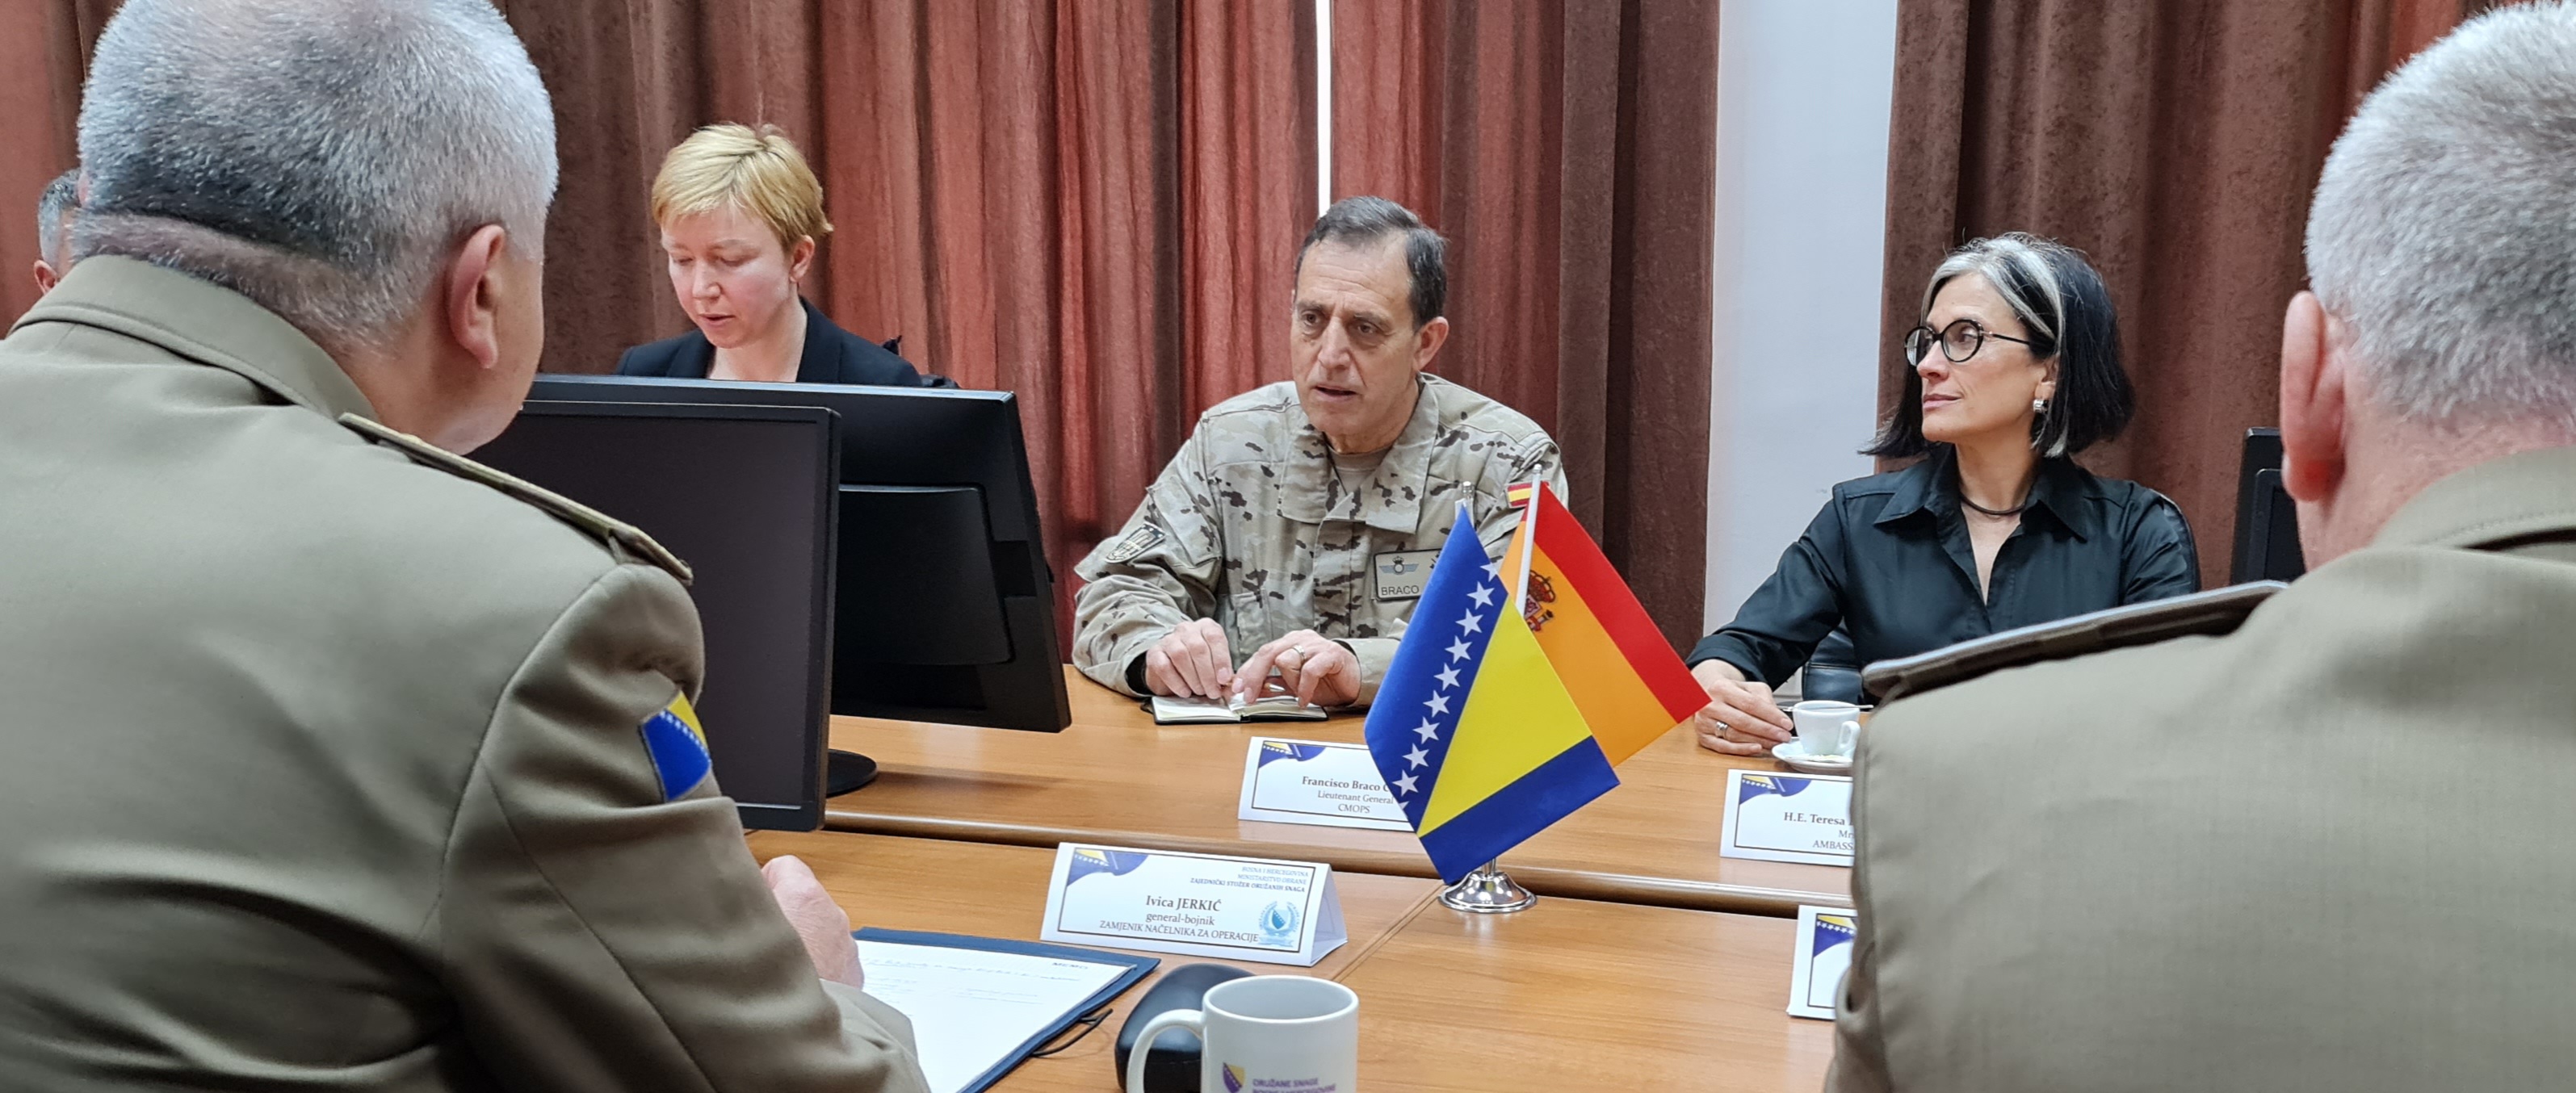 Encuentro del CMOPS con el adjunto al Jefe de las Fuerzas Armadas bosnias